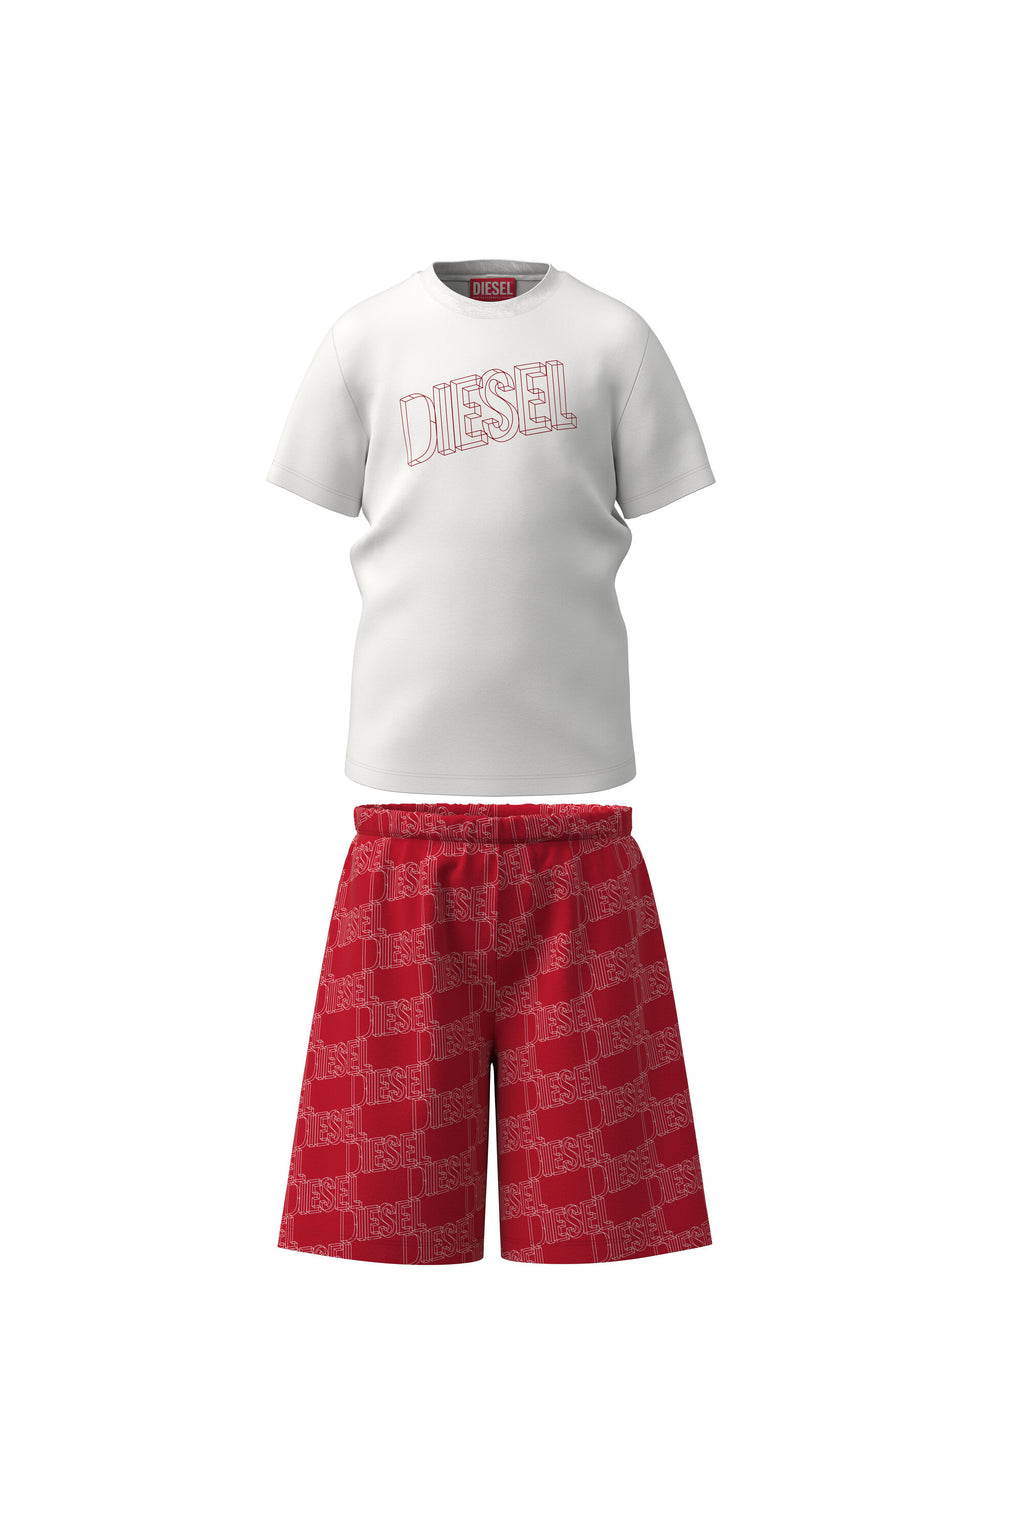 Pijama corto de jersey rojo y blanco con logotipo